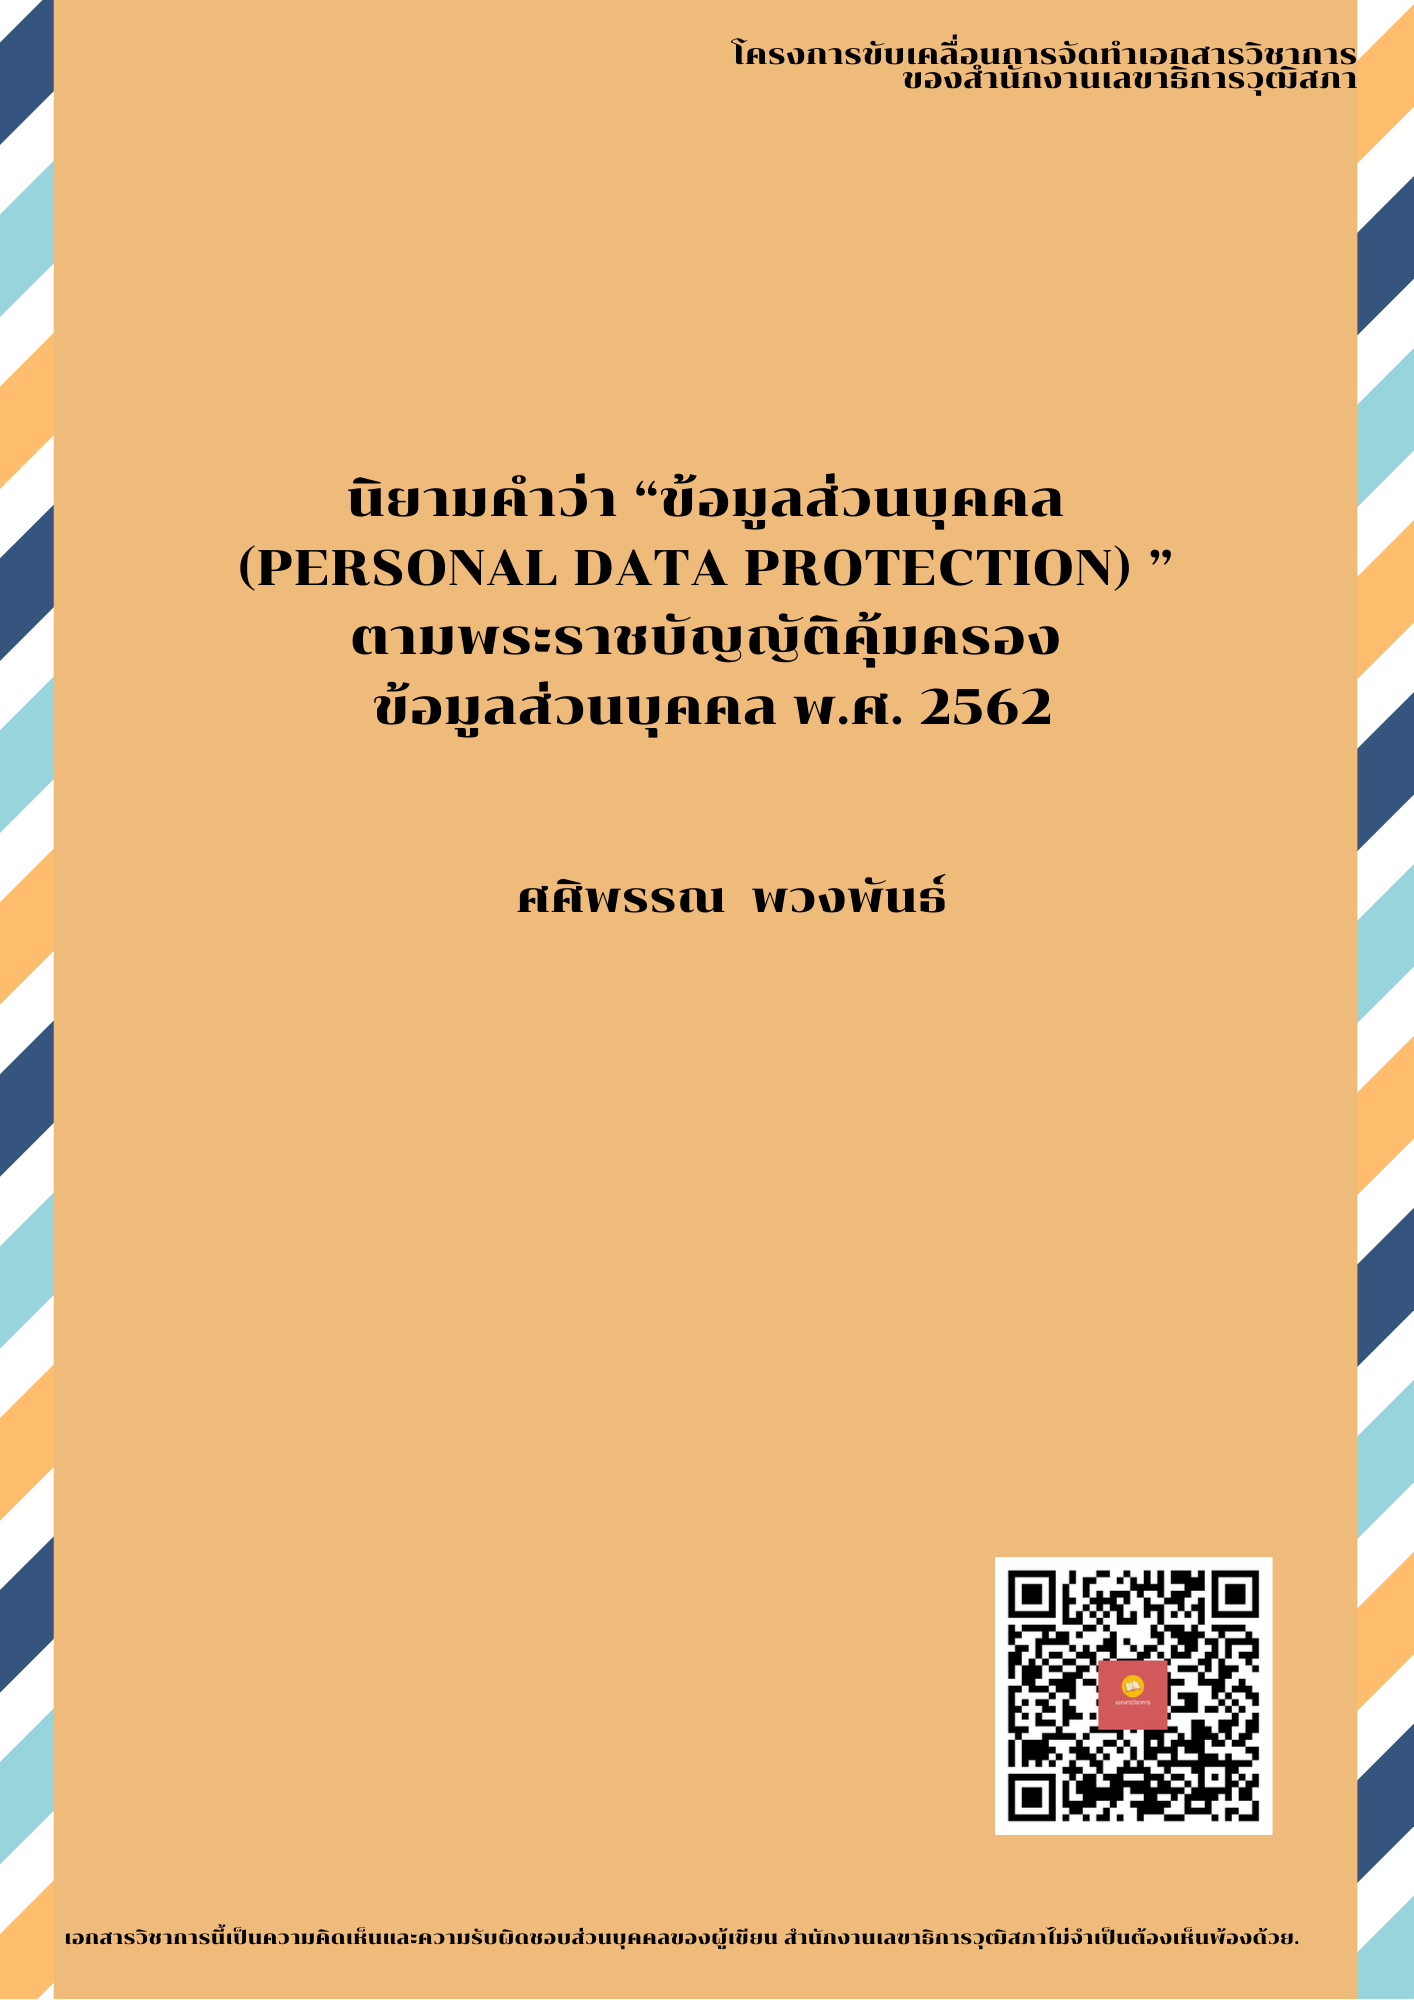 บทความทางวิชาการ เรื่อง "นิยามคำว่า (Personal Data Protection) ตามพระราชบัญญัติคุ้มครองข้อมูลส่วนบุคคล พ.ศ. 2562 "